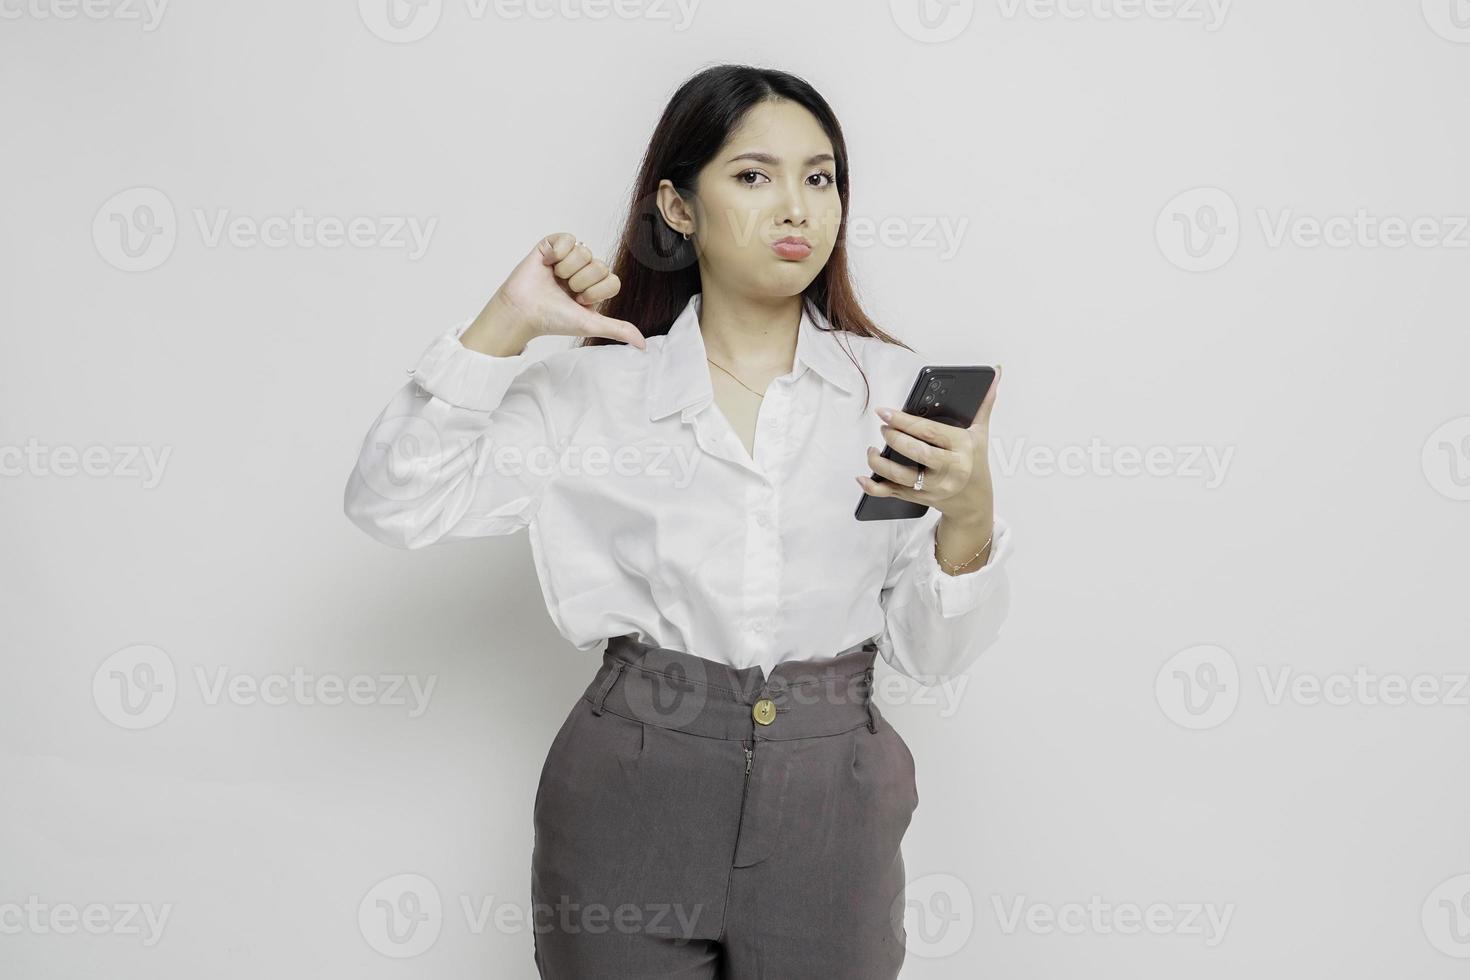 una mujer asiática decepcionada con pantalones blanco da un gesto de desaprobación con la mano hacia abajo, aislada de fondo blanco foto